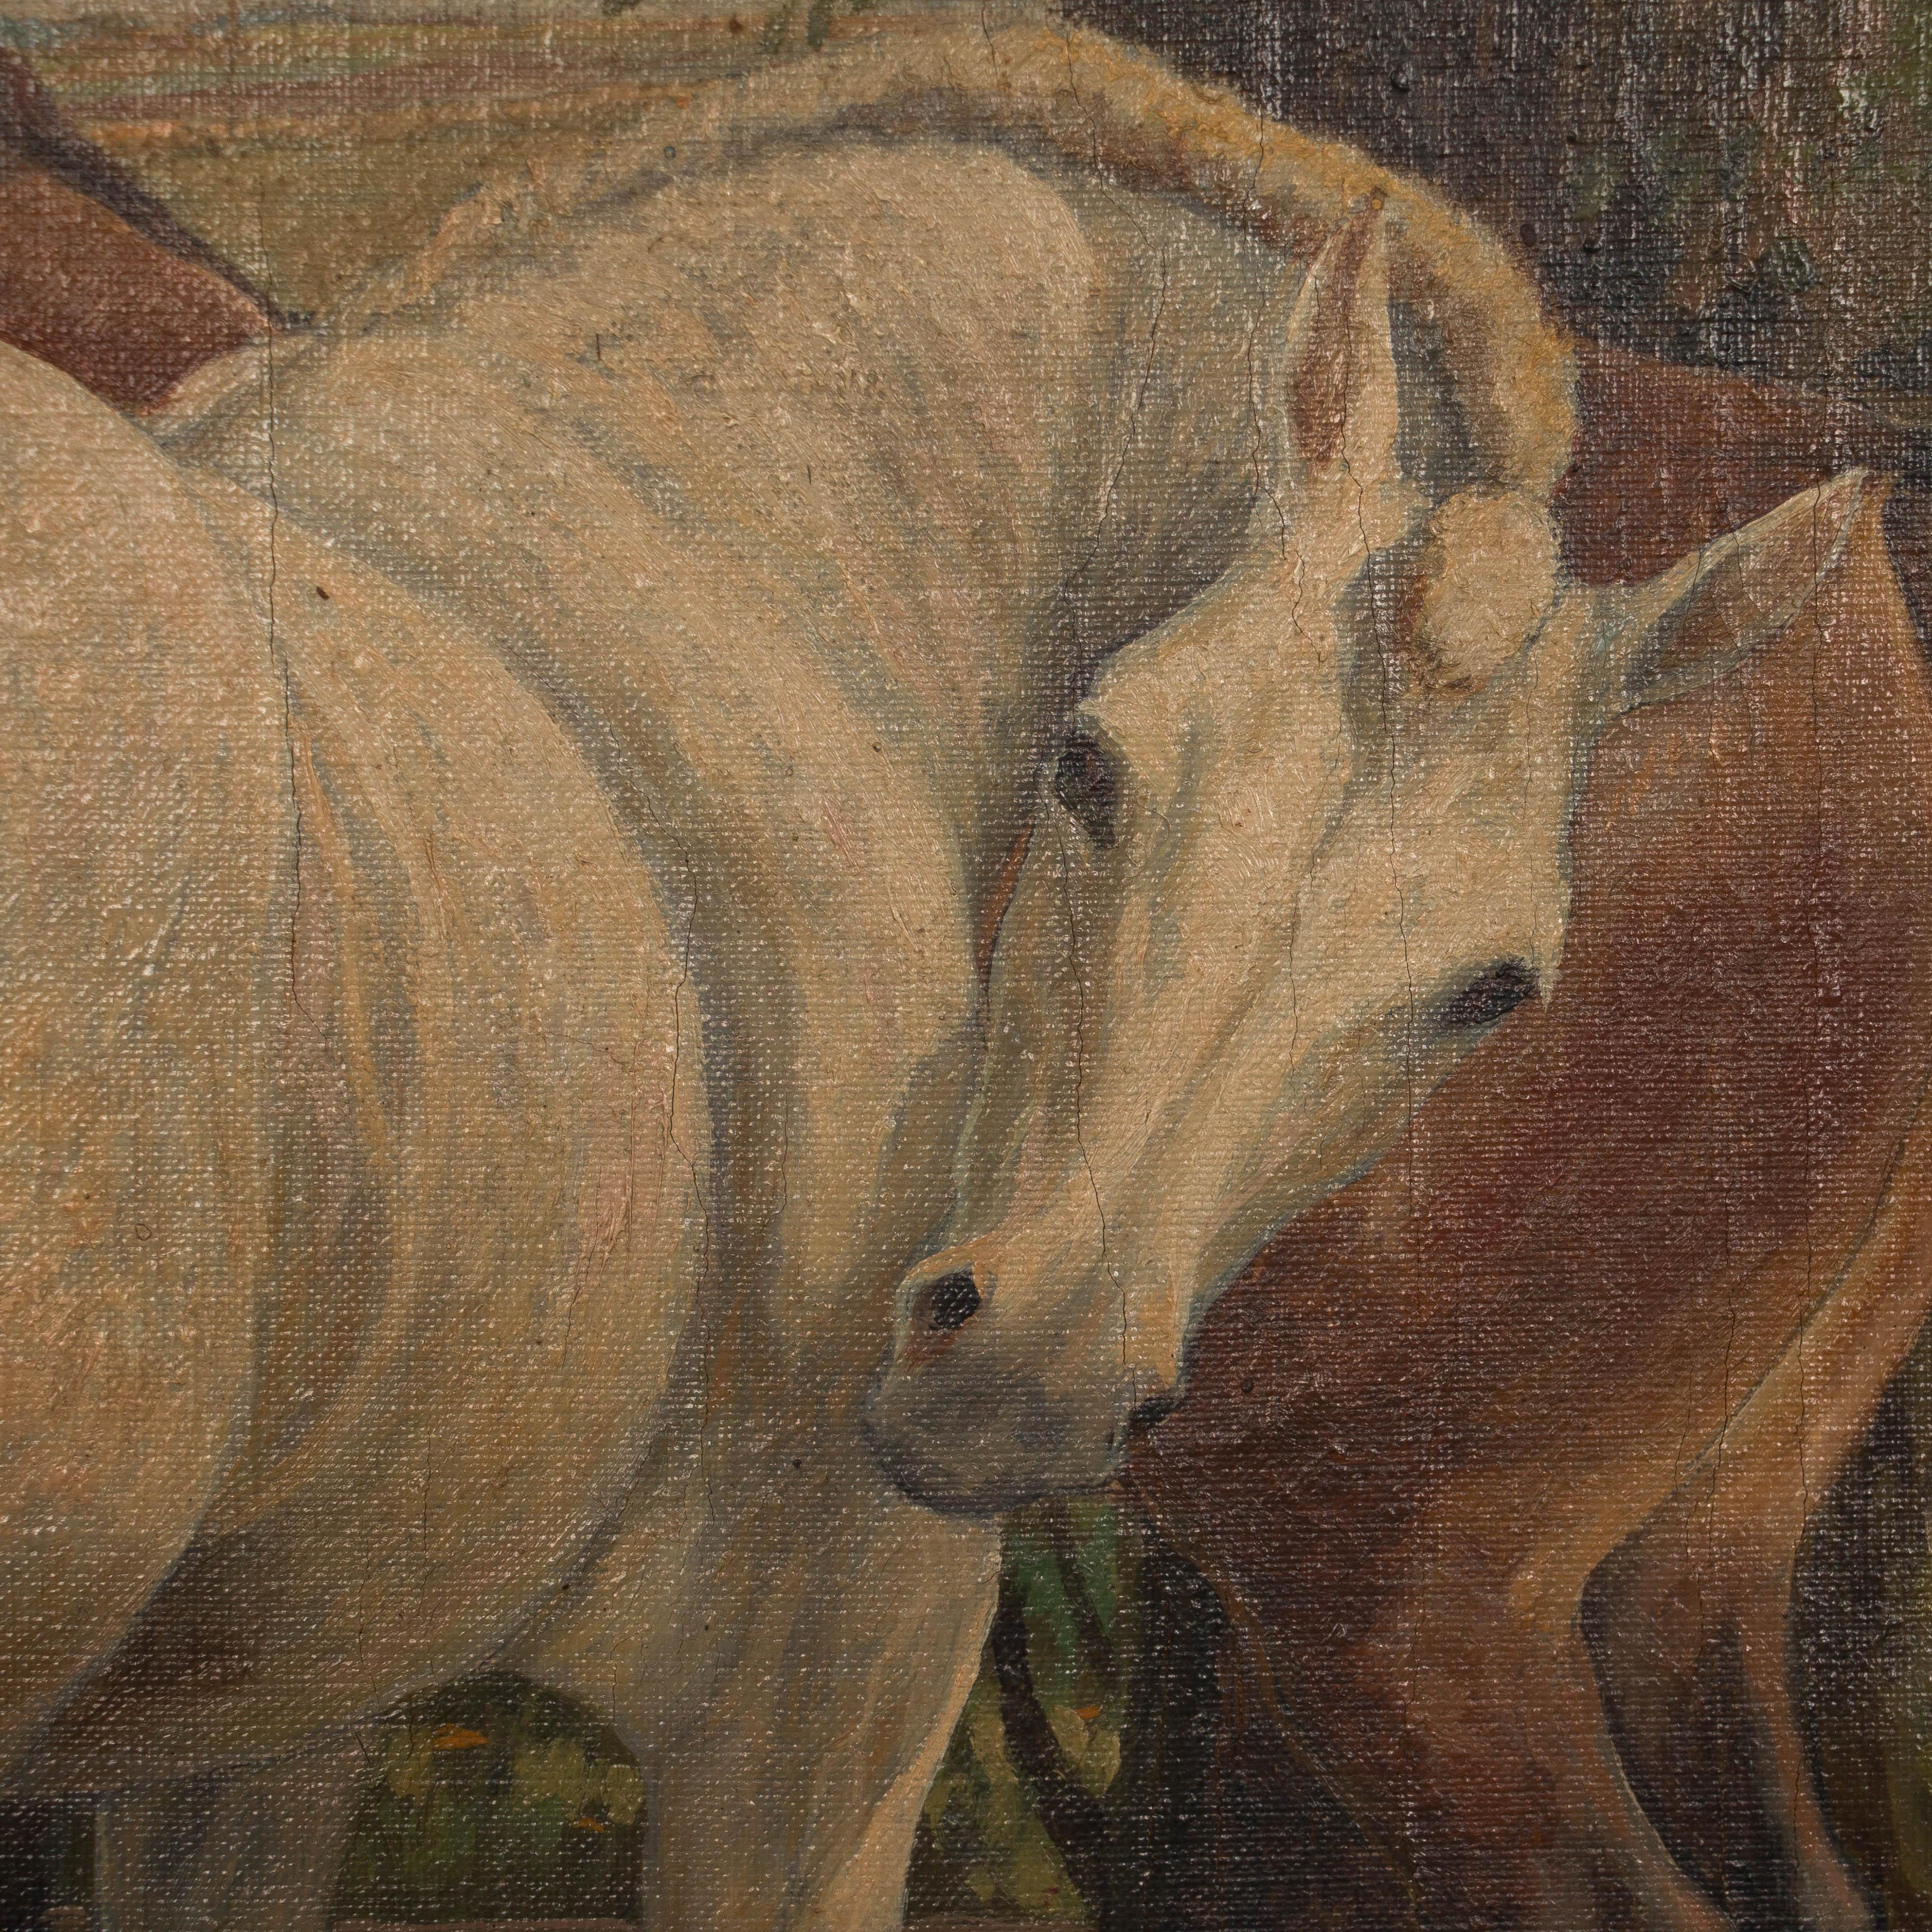 19th Century Antique Original Oil Painting of Horses Grazing, Signed Carl Hertz